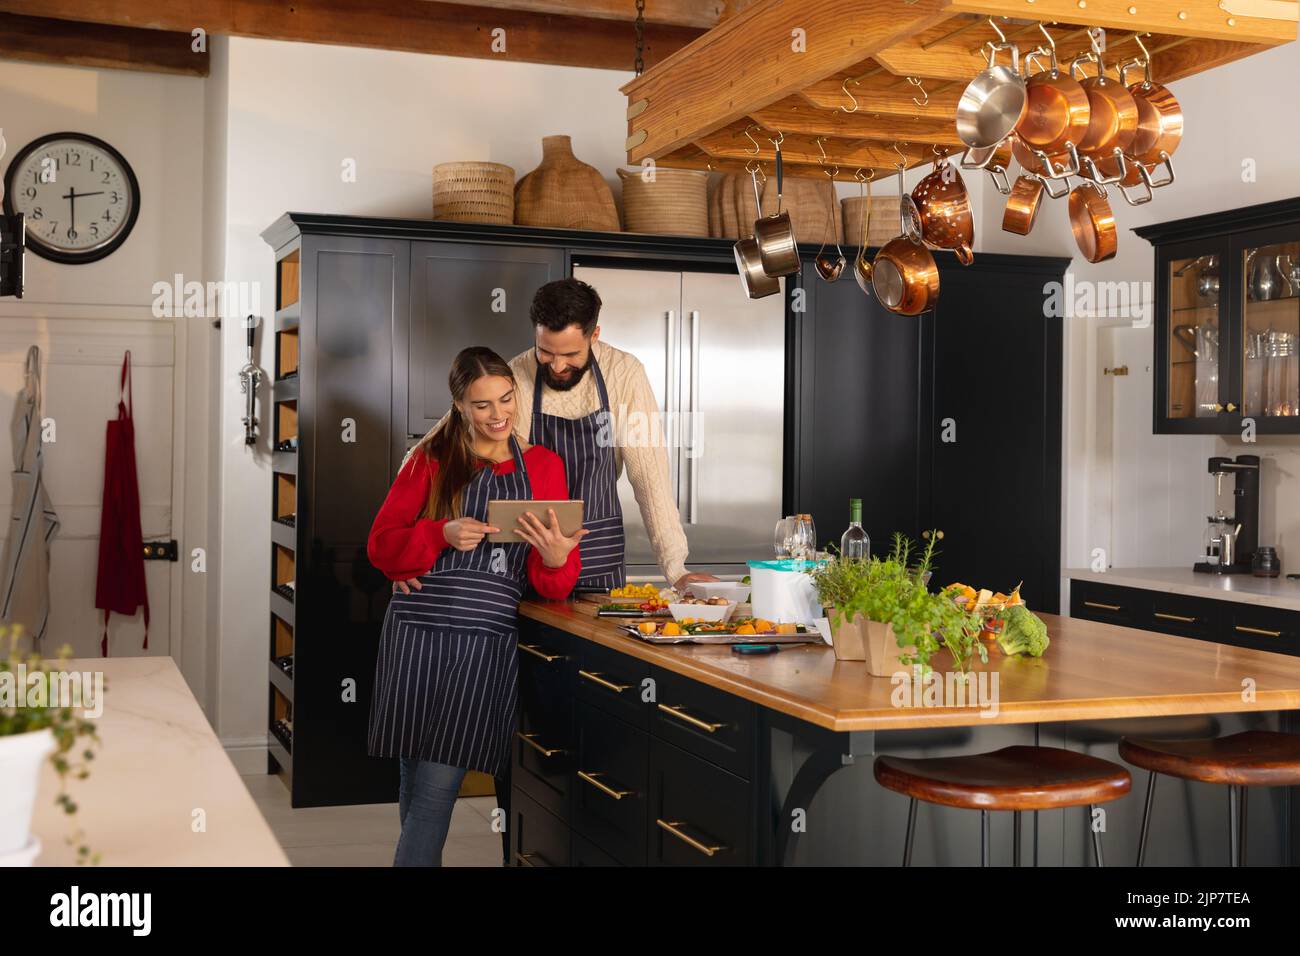 Glückliches kaukasisches Paar, das in der Küche Essen zubereitet, das Rezept umarmt und auf einem Tablet anschaut Stockfoto